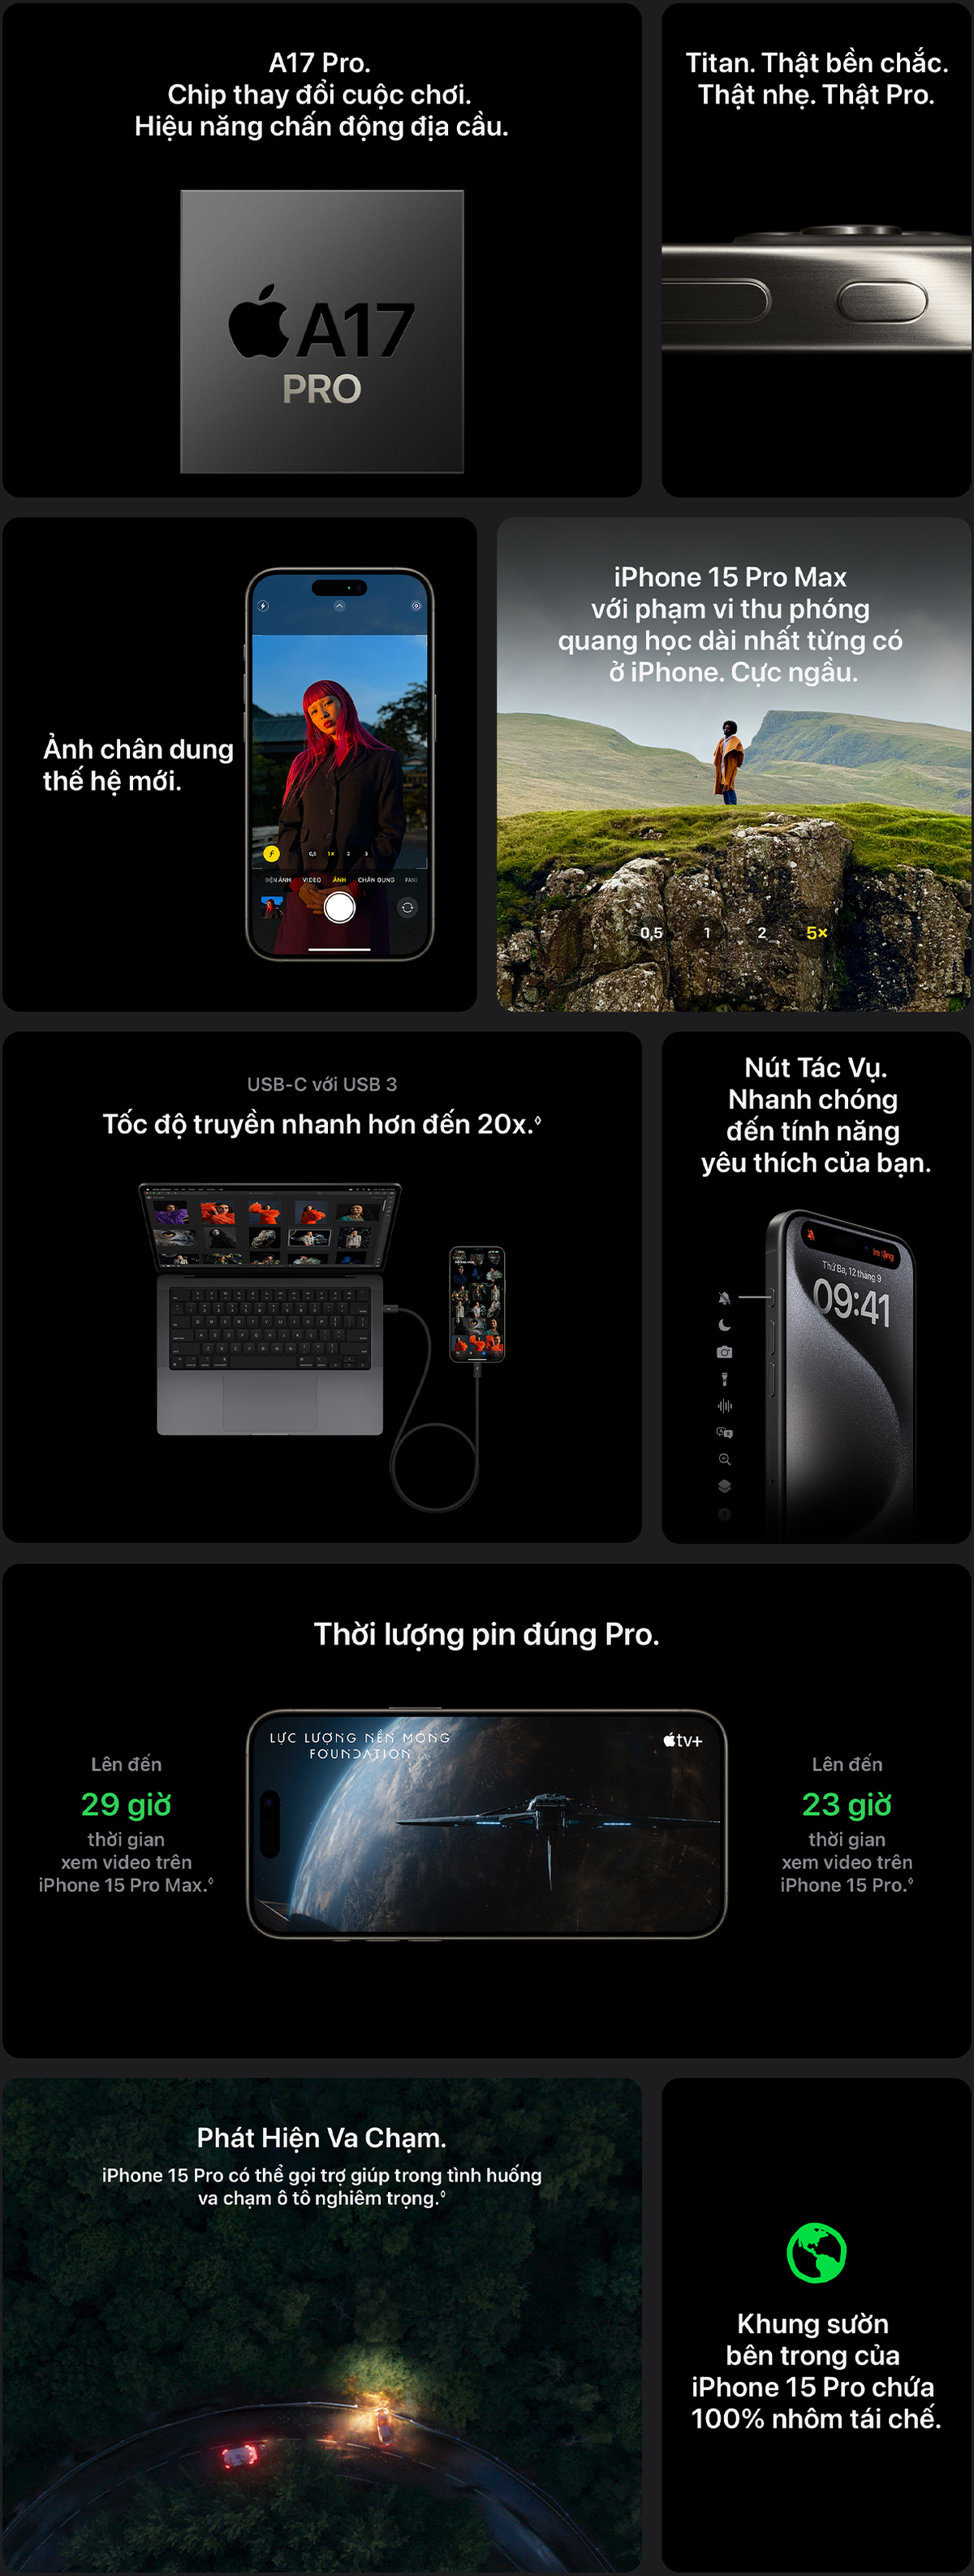 iPhone 15 Pro Max 256GB Black Titanium (MU773VN/A)